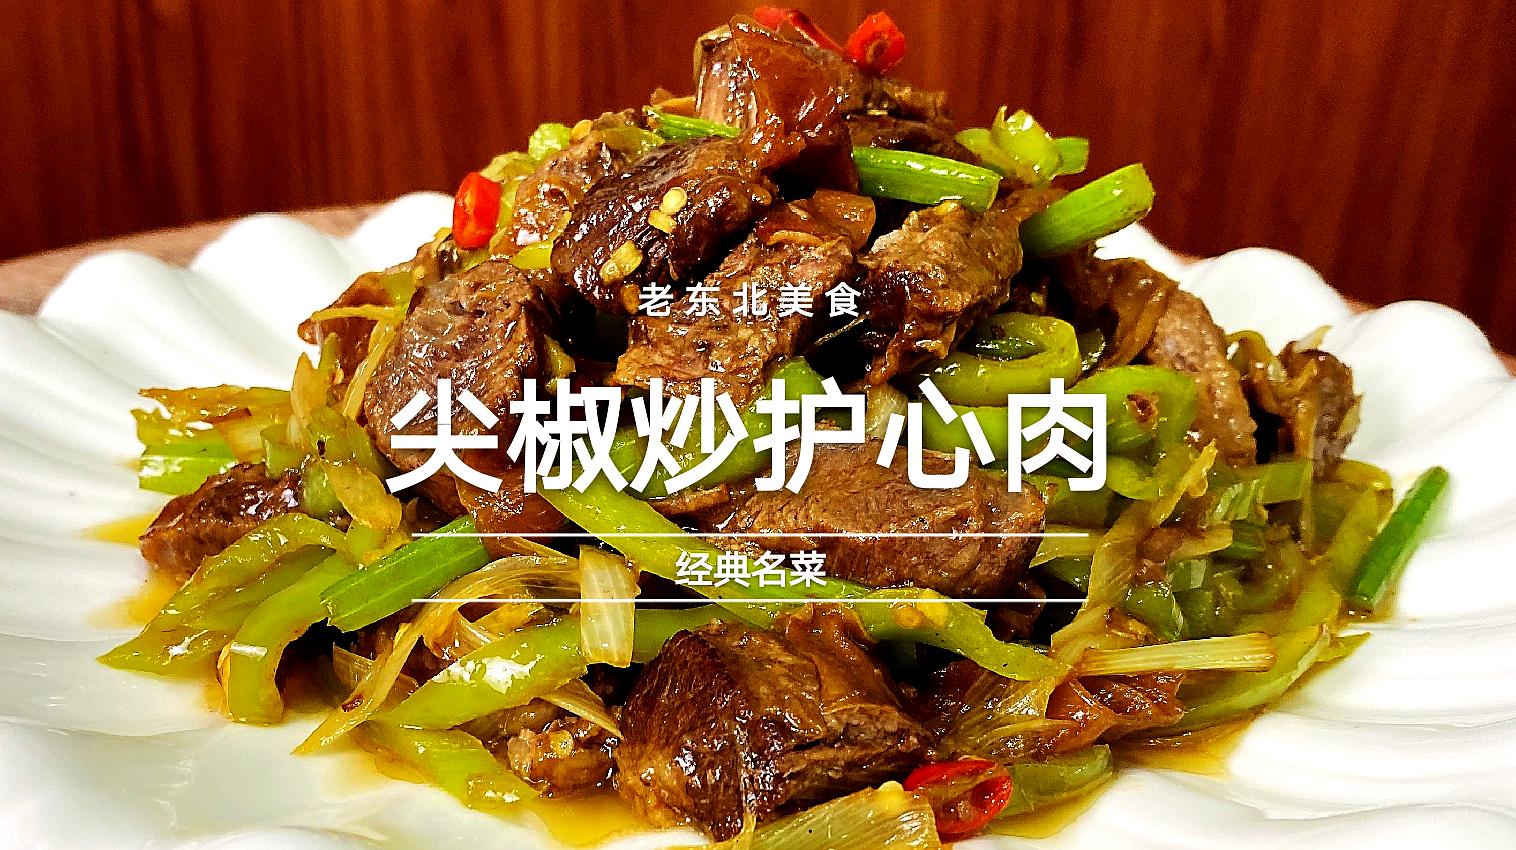 老东北分享地道家常菜,尖椒炒护心肉,鲜辣筋道,端午节添道硬菜